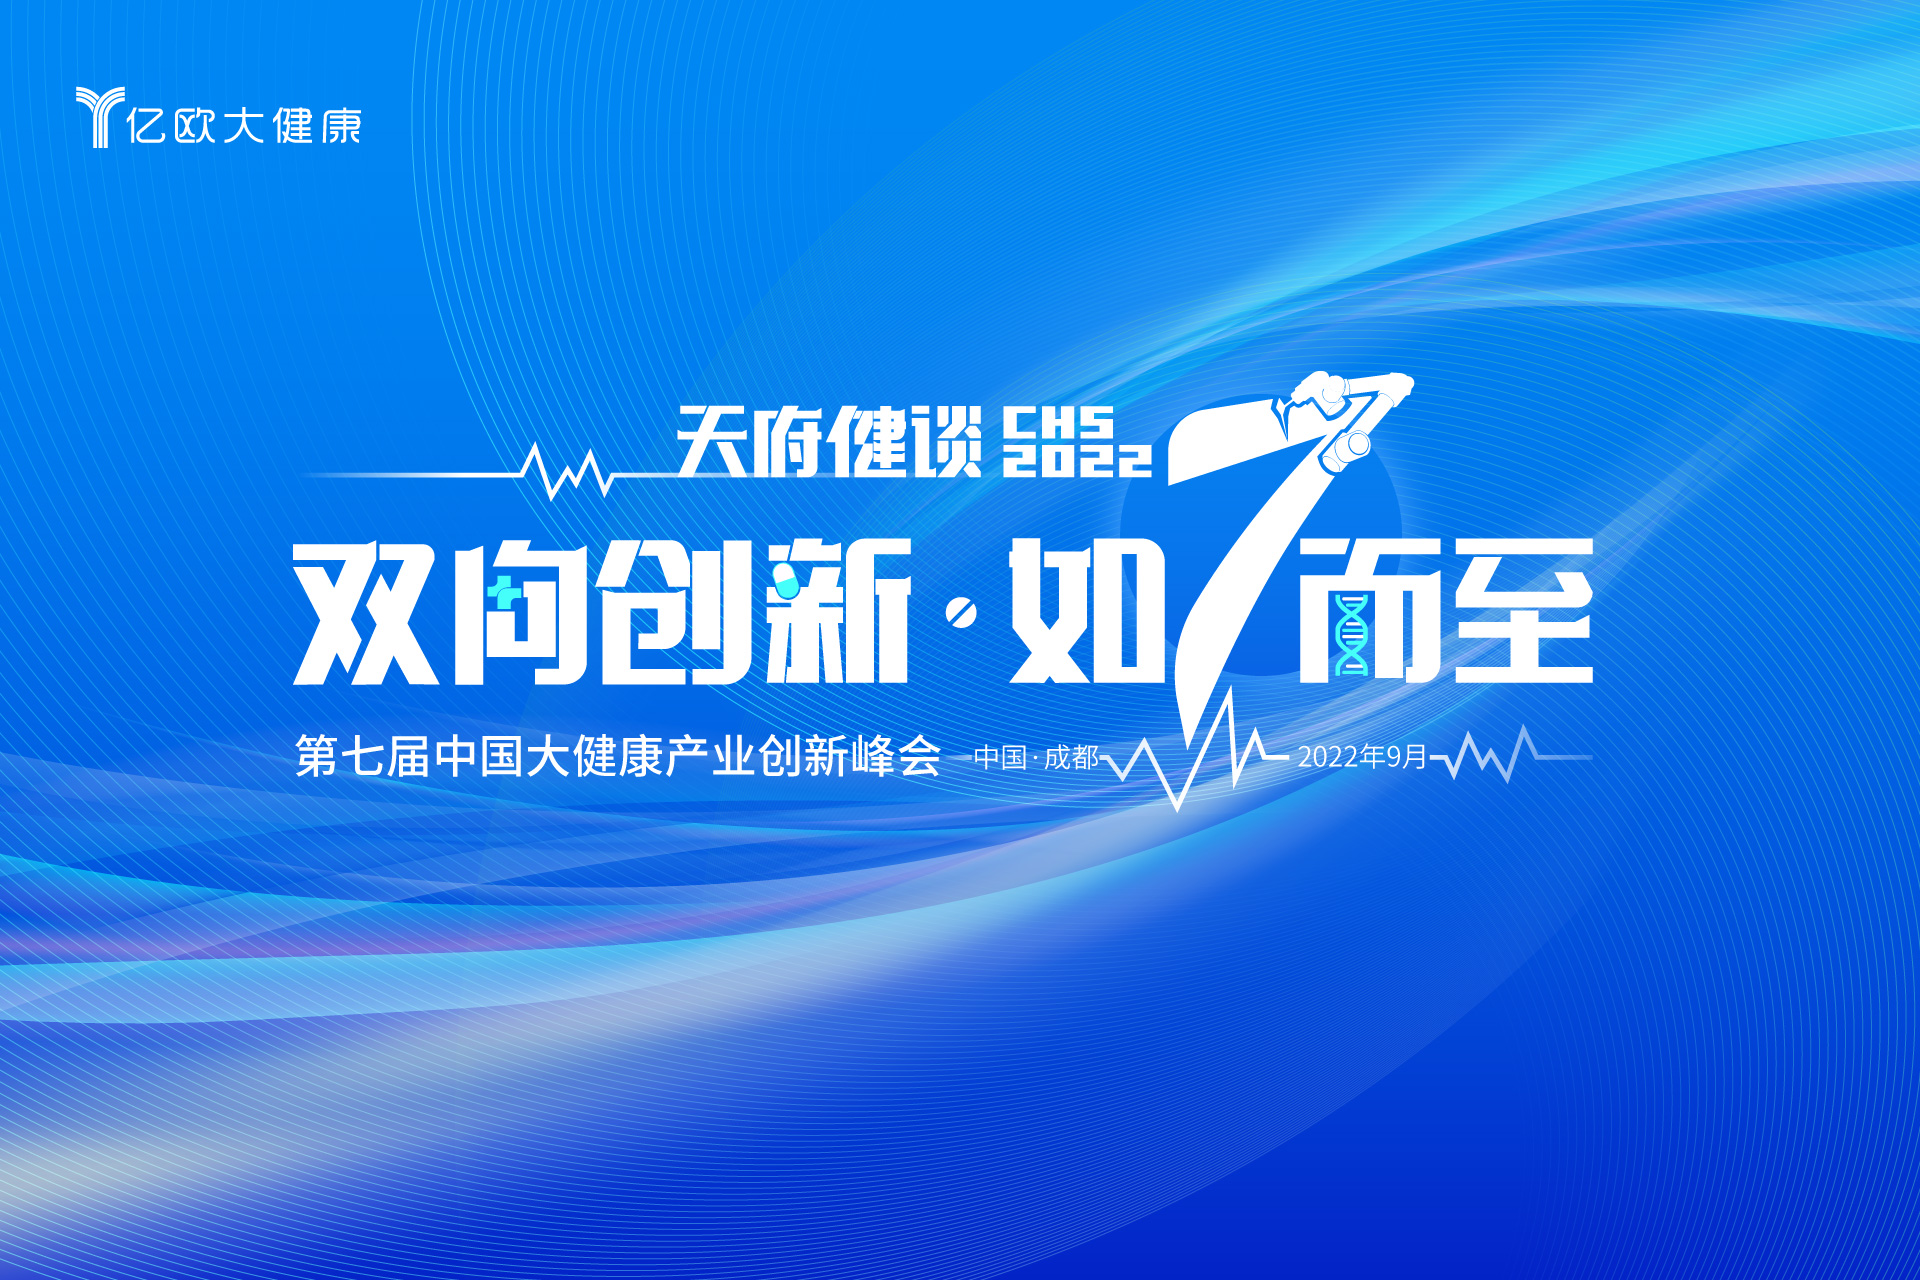 7th CHS 第七届中国大健康产业升级峰会主题发布：双向创新